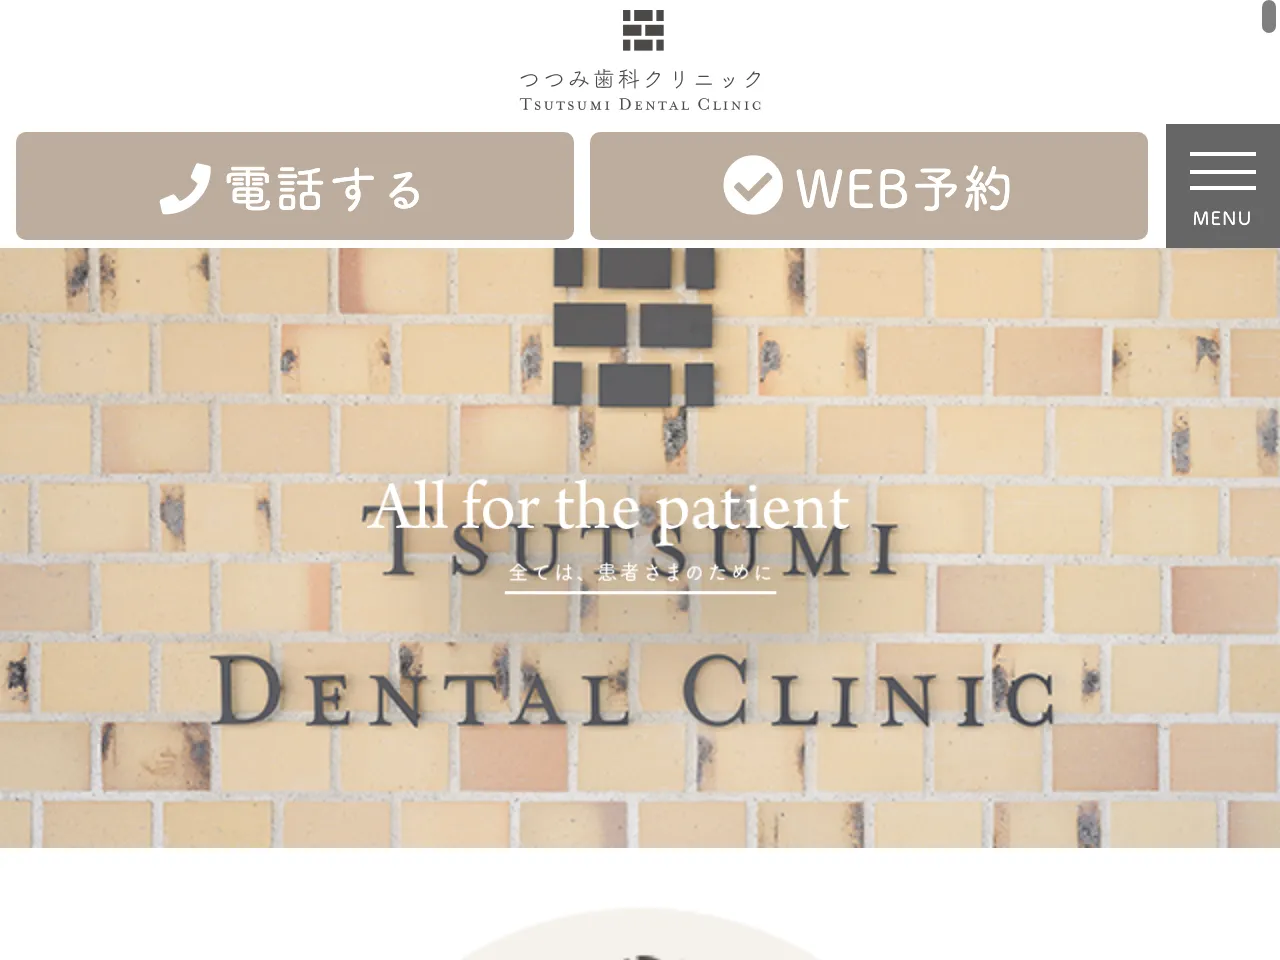 つつみ歯科クリニックのウェブサイト